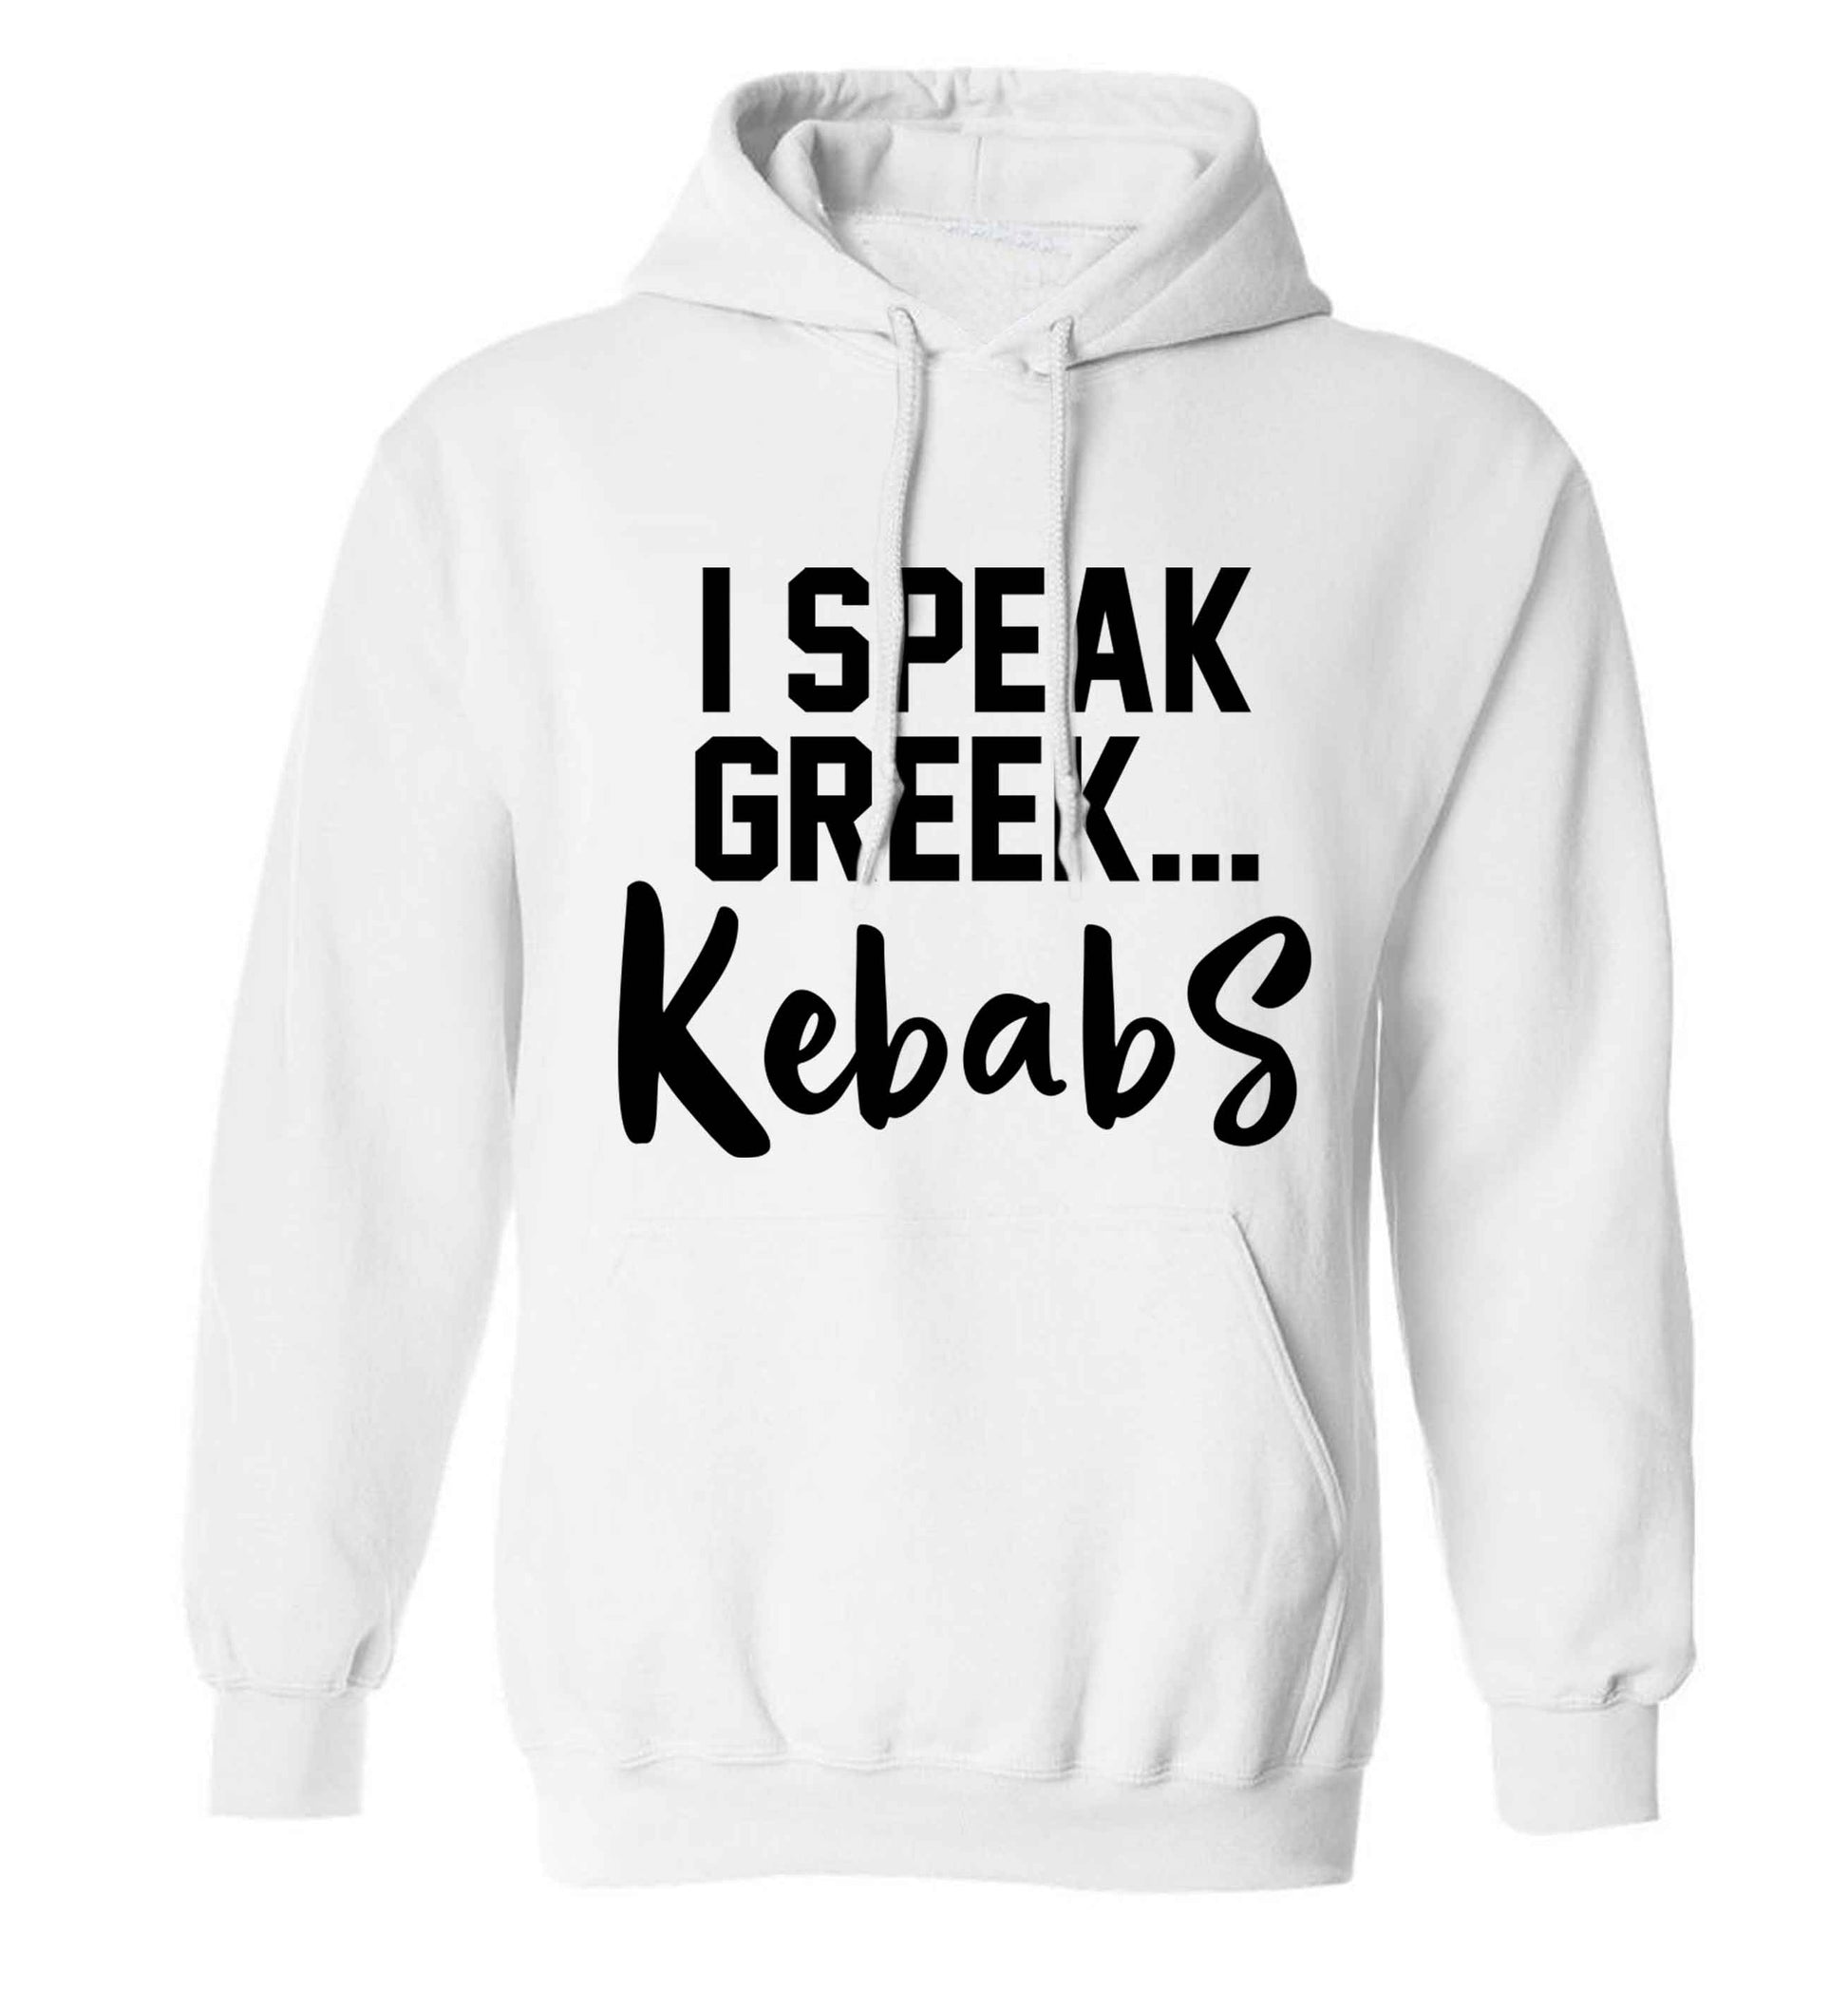 I speak Greek...kebabs adults unisex white hoodie 2XL